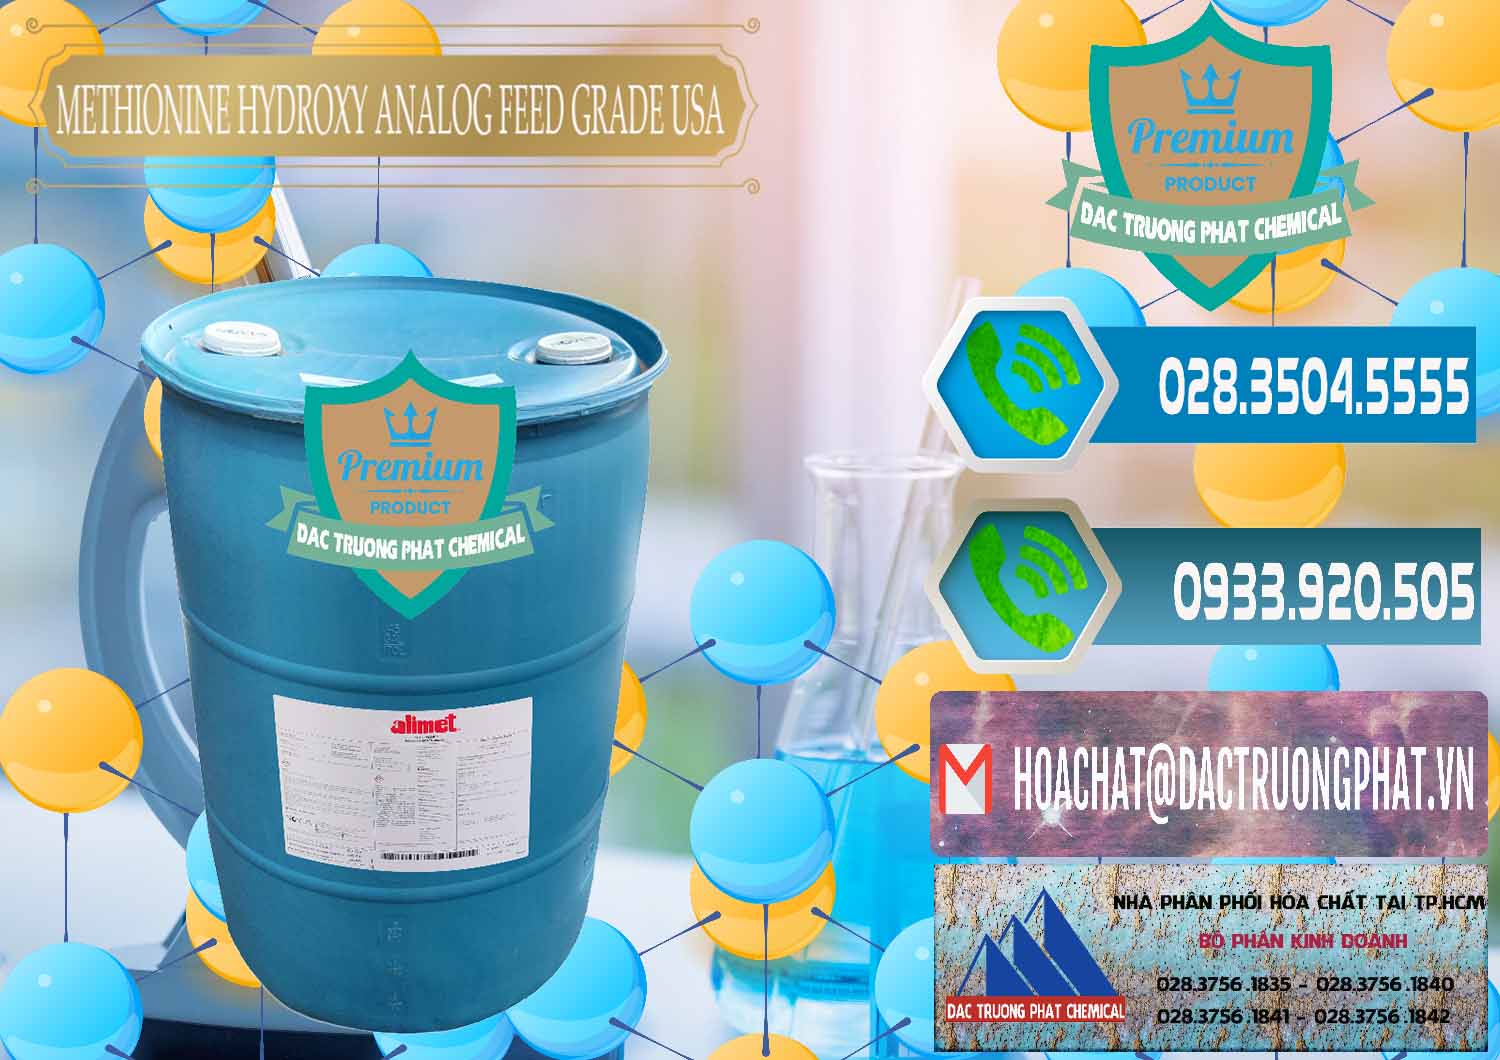 Cung cấp và bán Methionine Nước - Dạng Lỏng Novus Alimet Mỹ USA - 0316 - Công ty chuyên phân phối ( cung ứng ) hóa chất tại TP.HCM - congtyhoachat.net